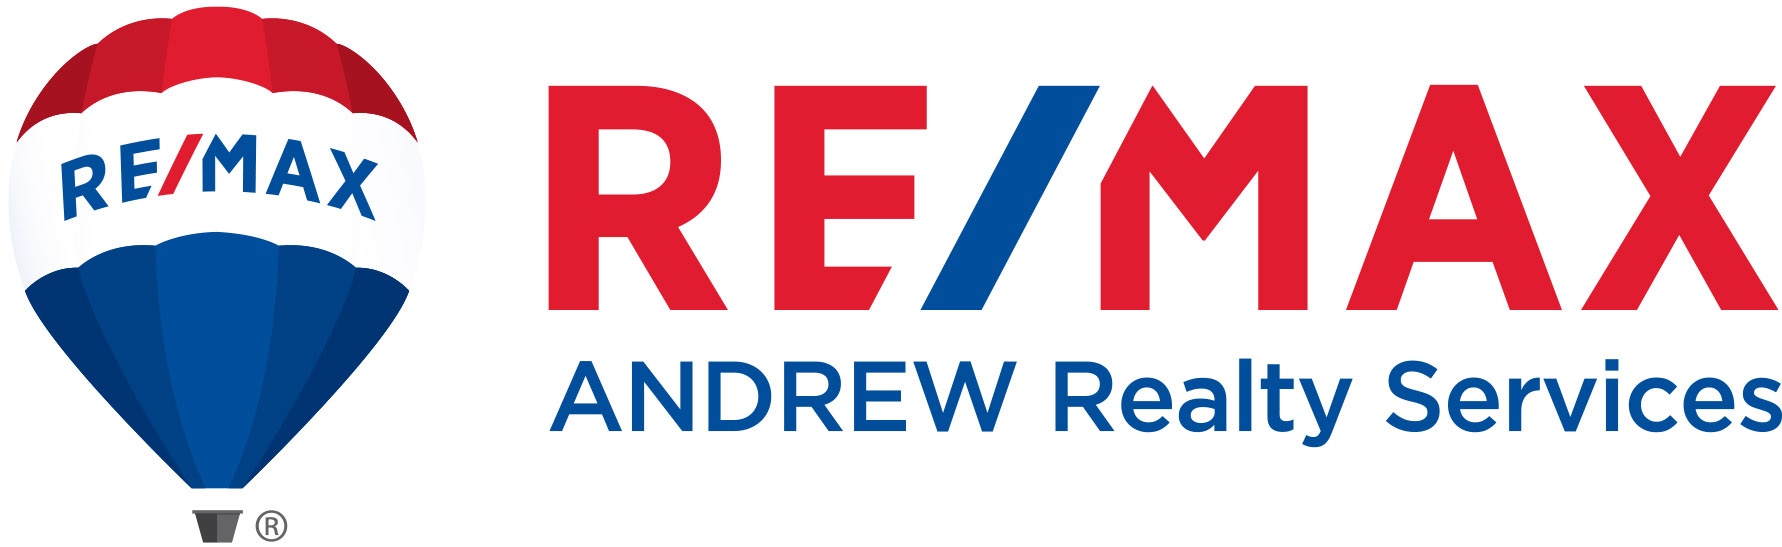 REMAX-Andrew-New-Logo